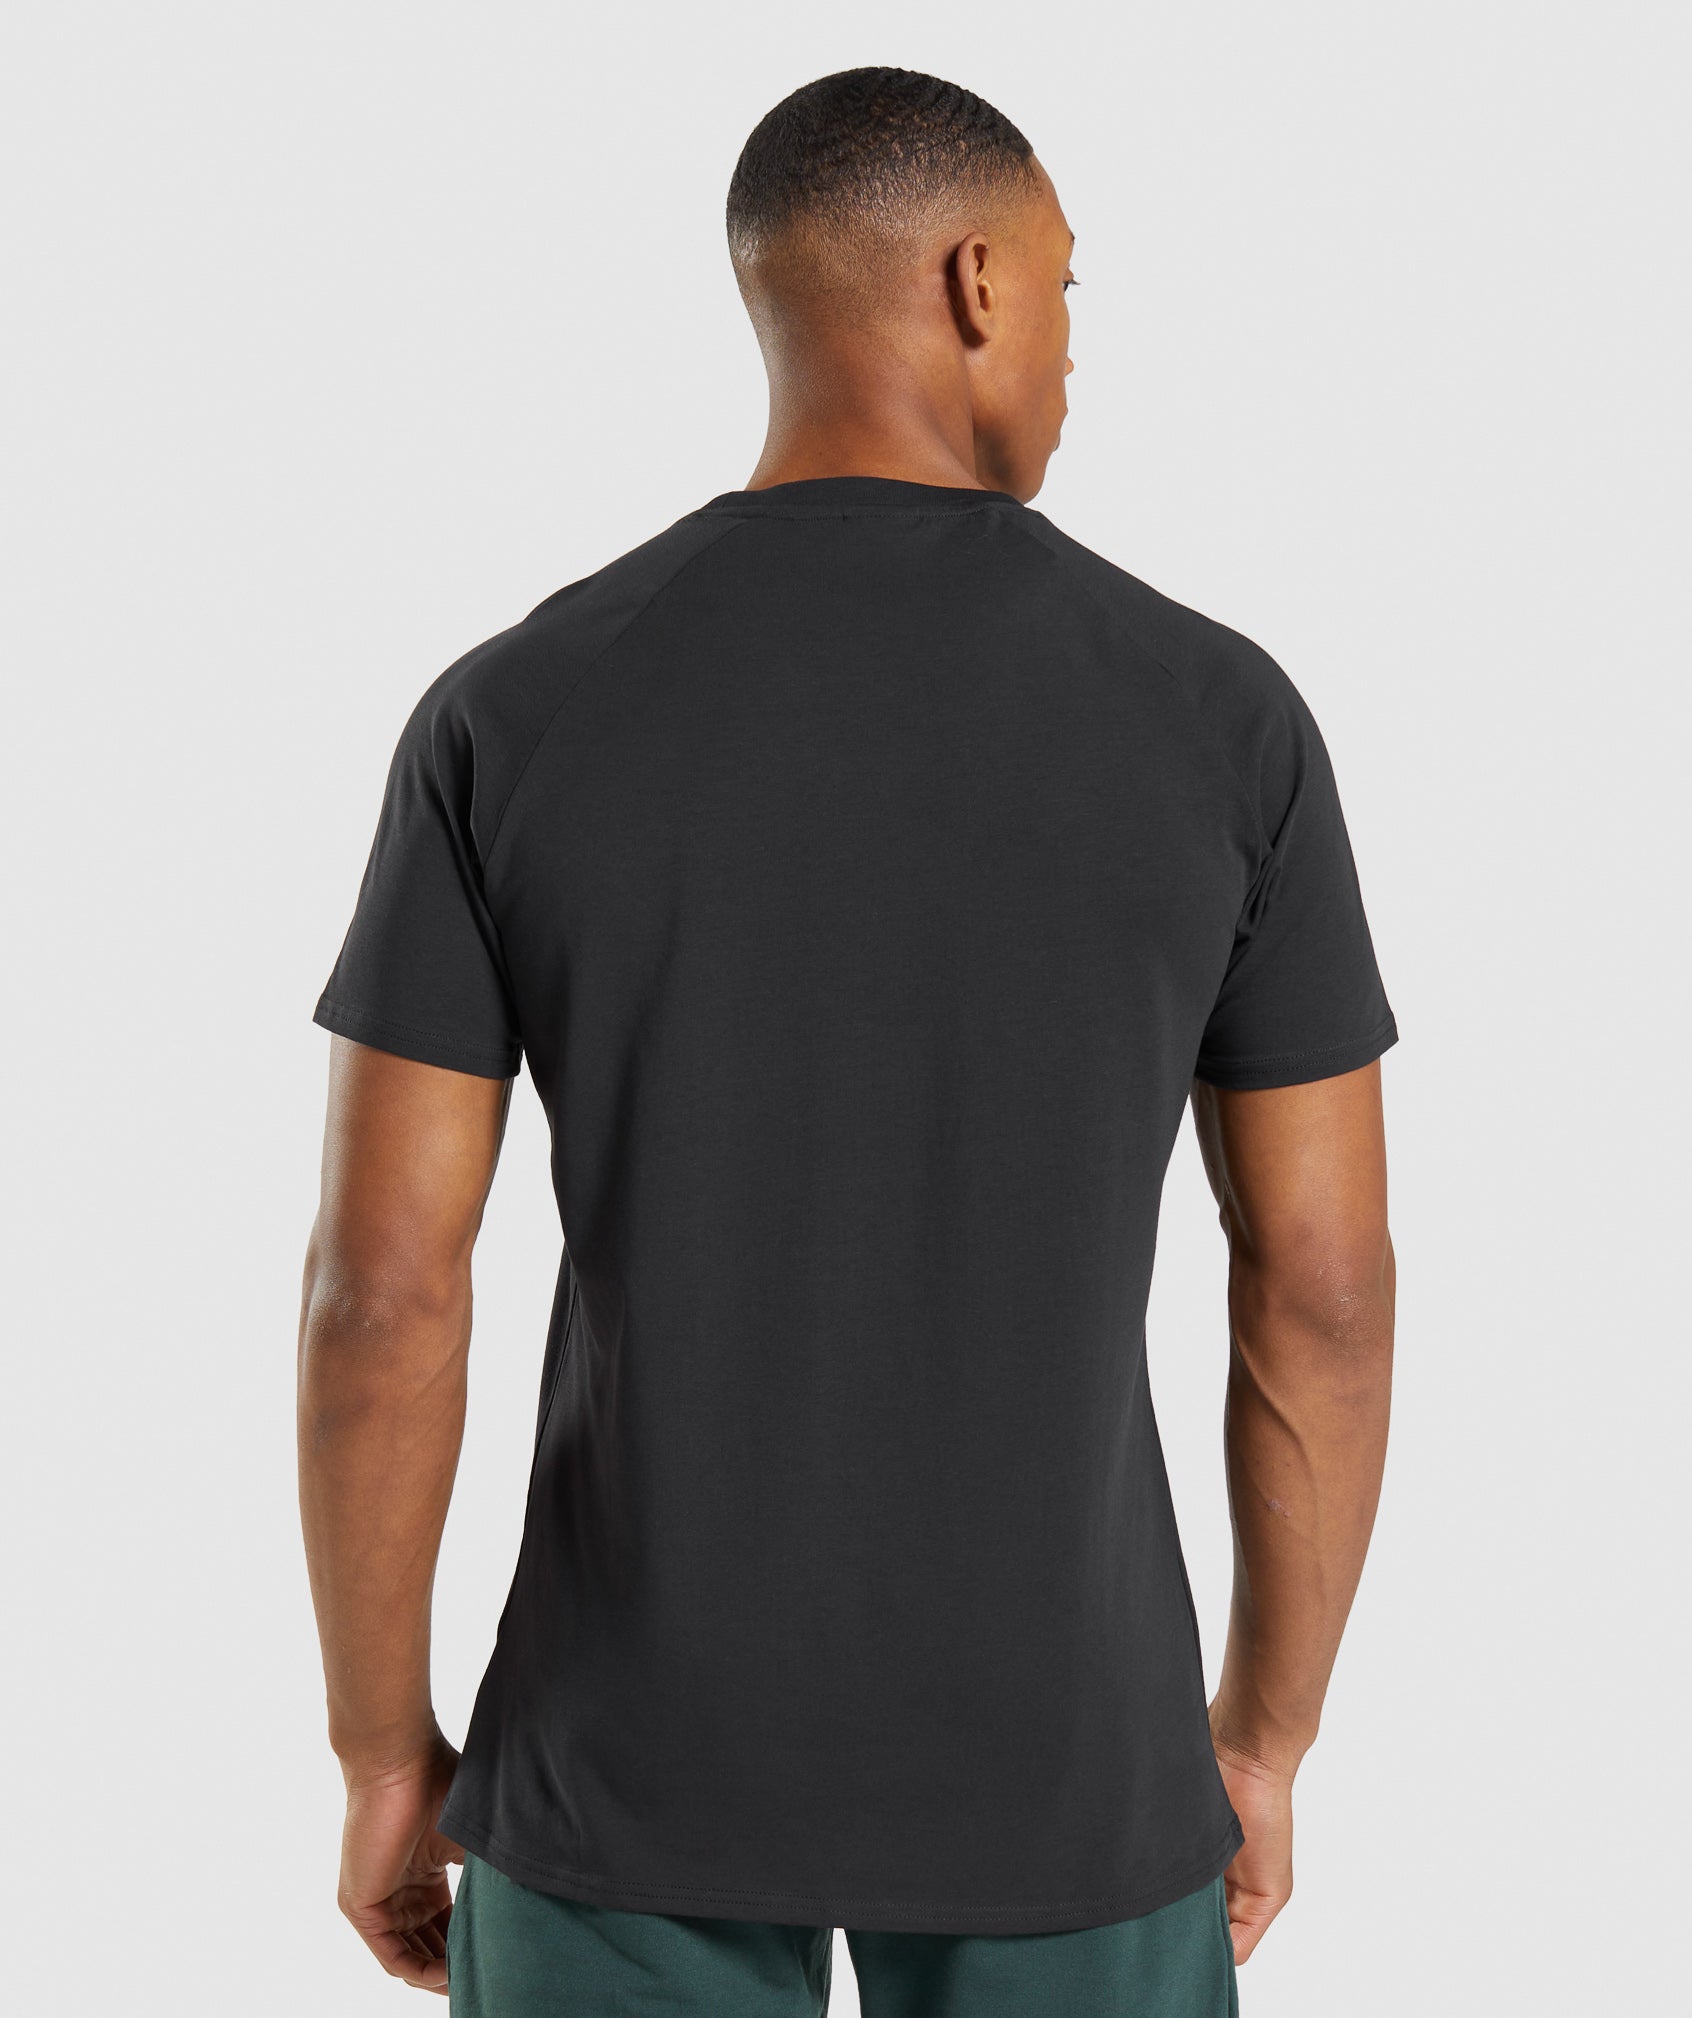 Apollo Camo T-Shirt in Black - view 2